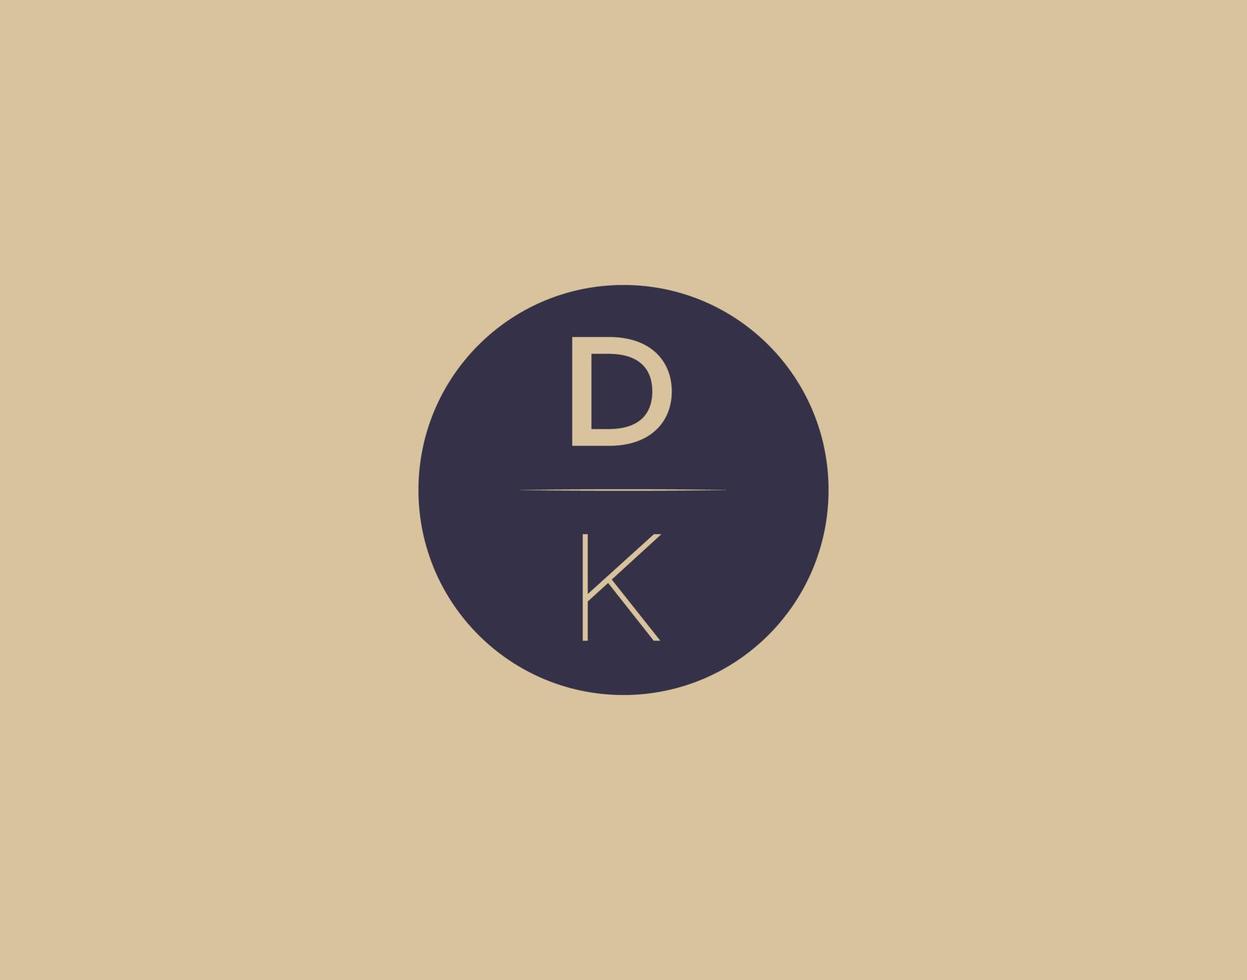 DK letter modern elegant logo design vector images